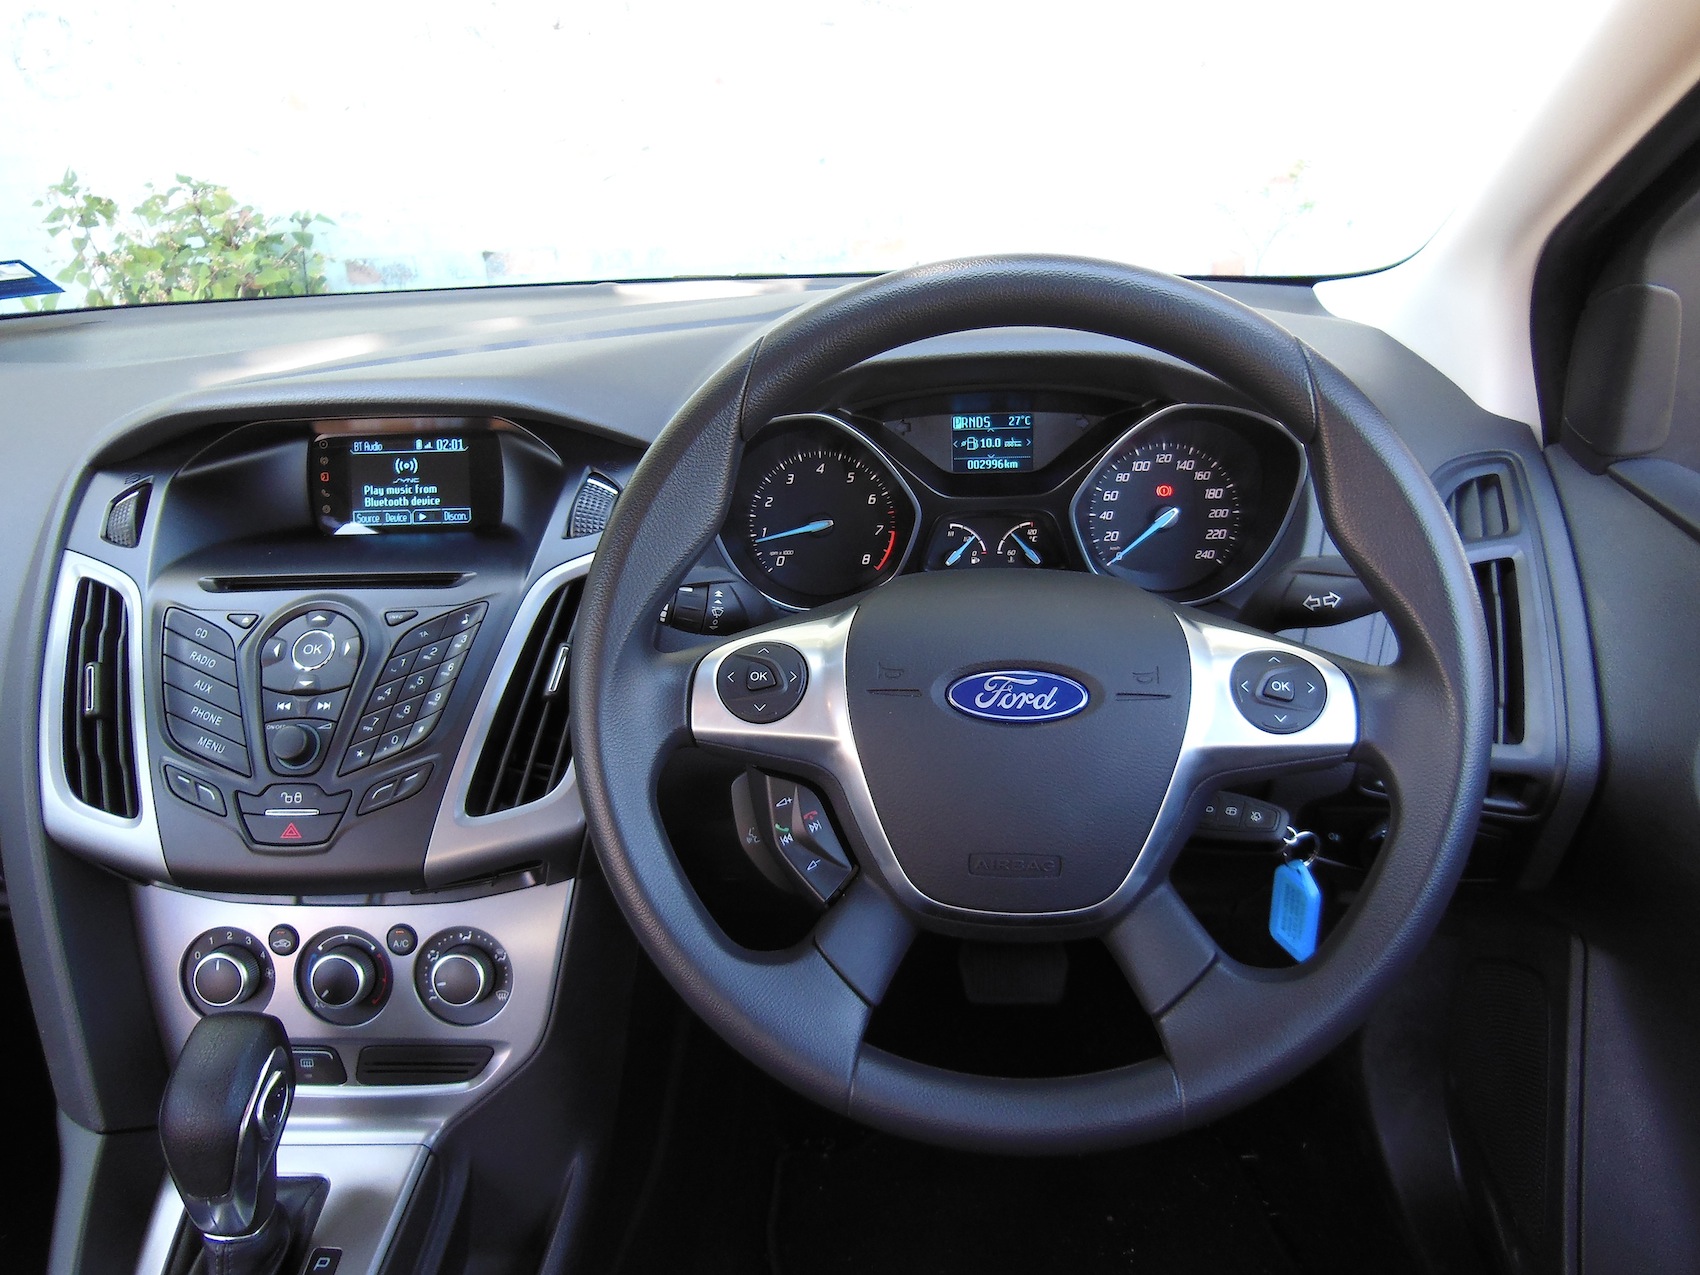 Ford focus ambiente sedan review #4